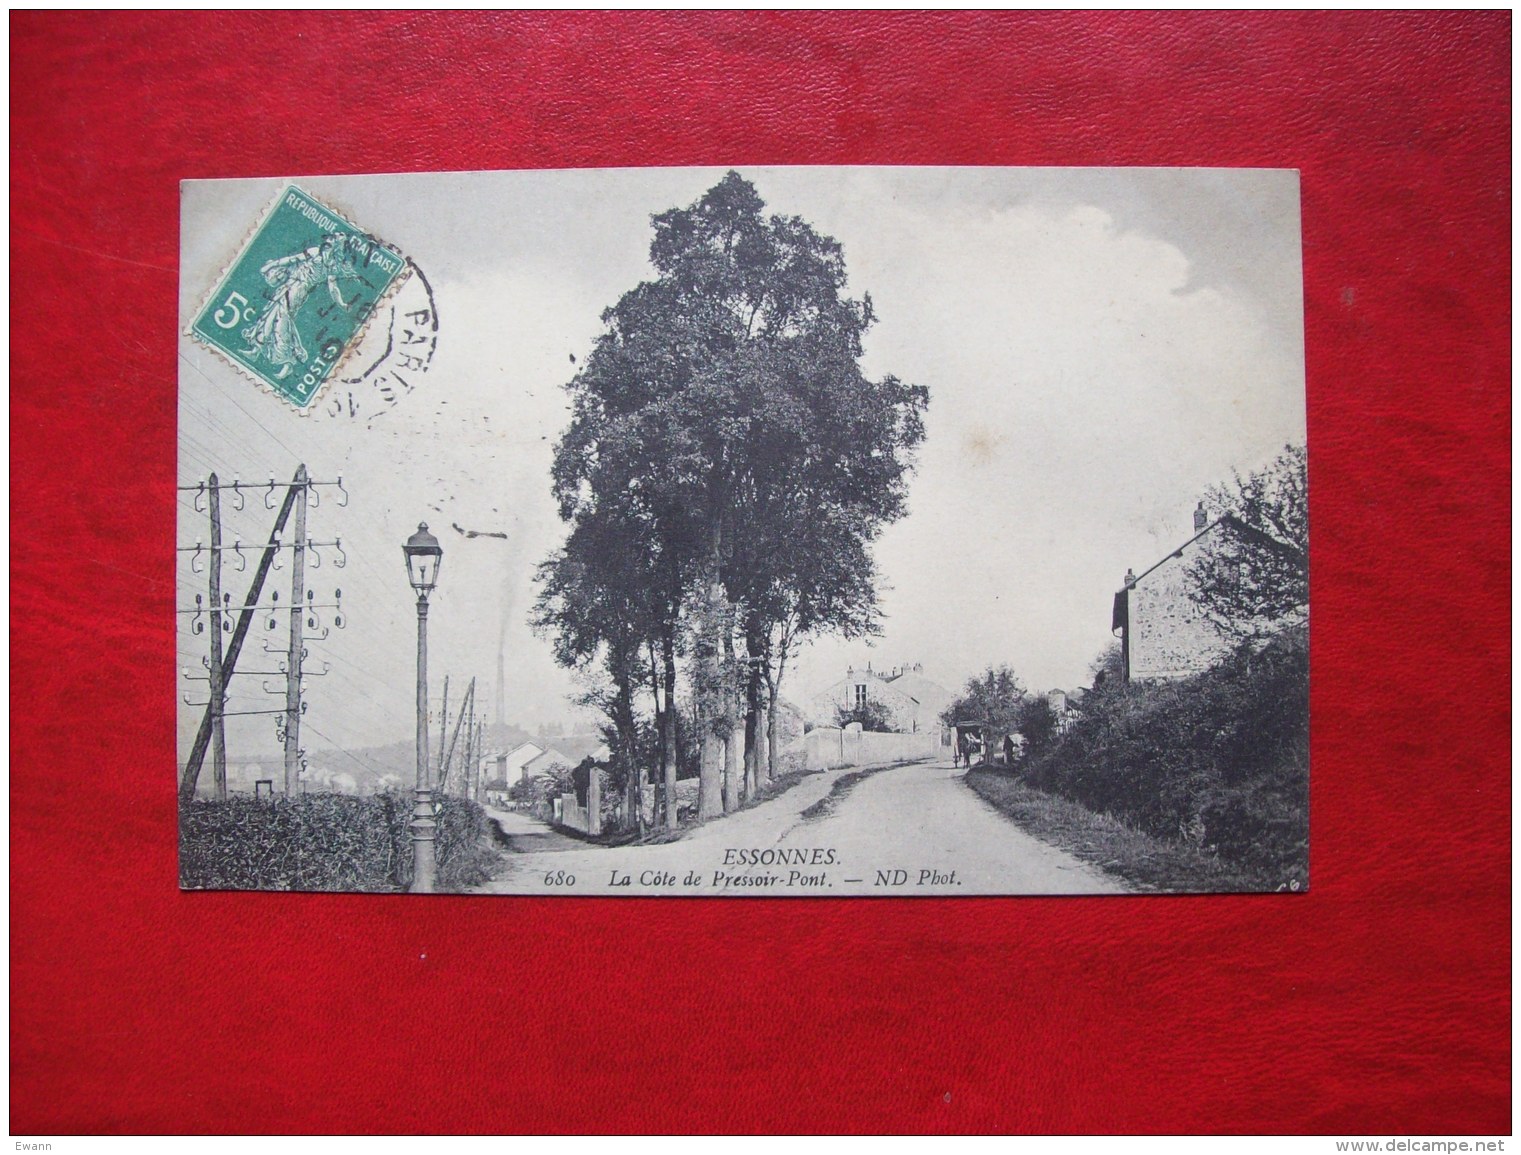 Carte Postale Ancienne D'Essonnes: La Côte Du Pressoir-Pont - Corbeil Essonnes